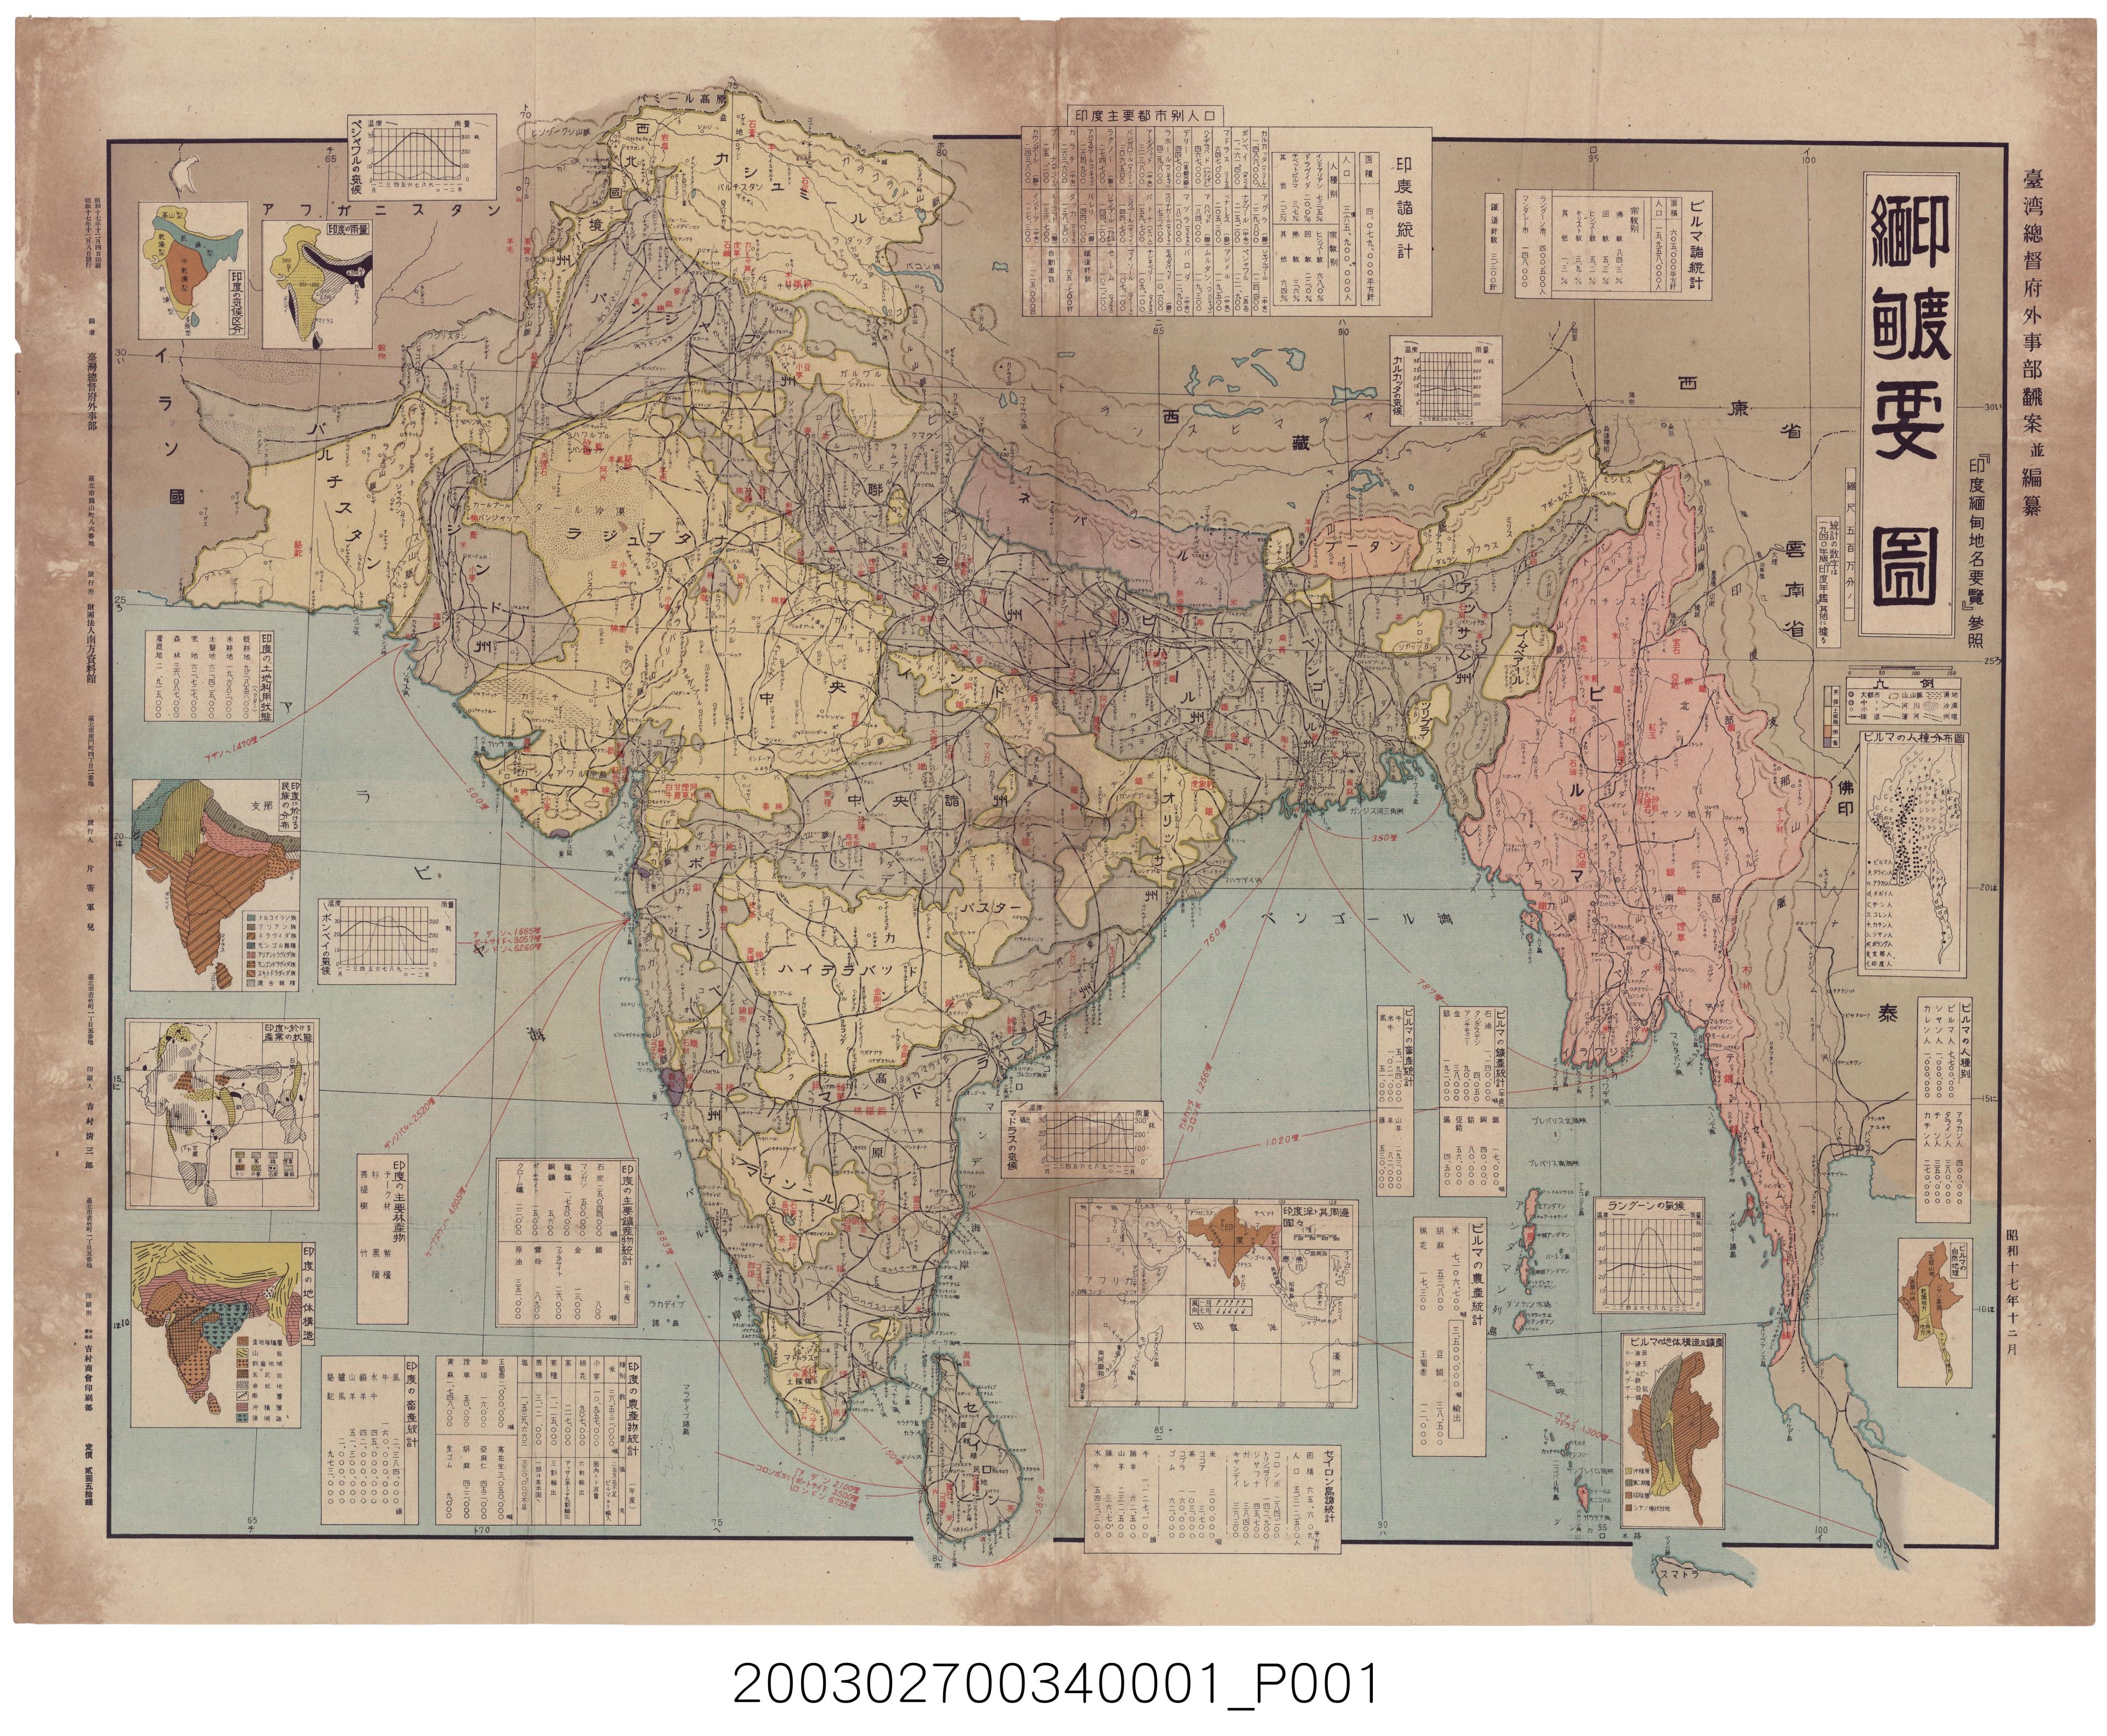 臺灣總督府外事部〈五百萬分一印度緬甸要圖〉地圖 (共1張)